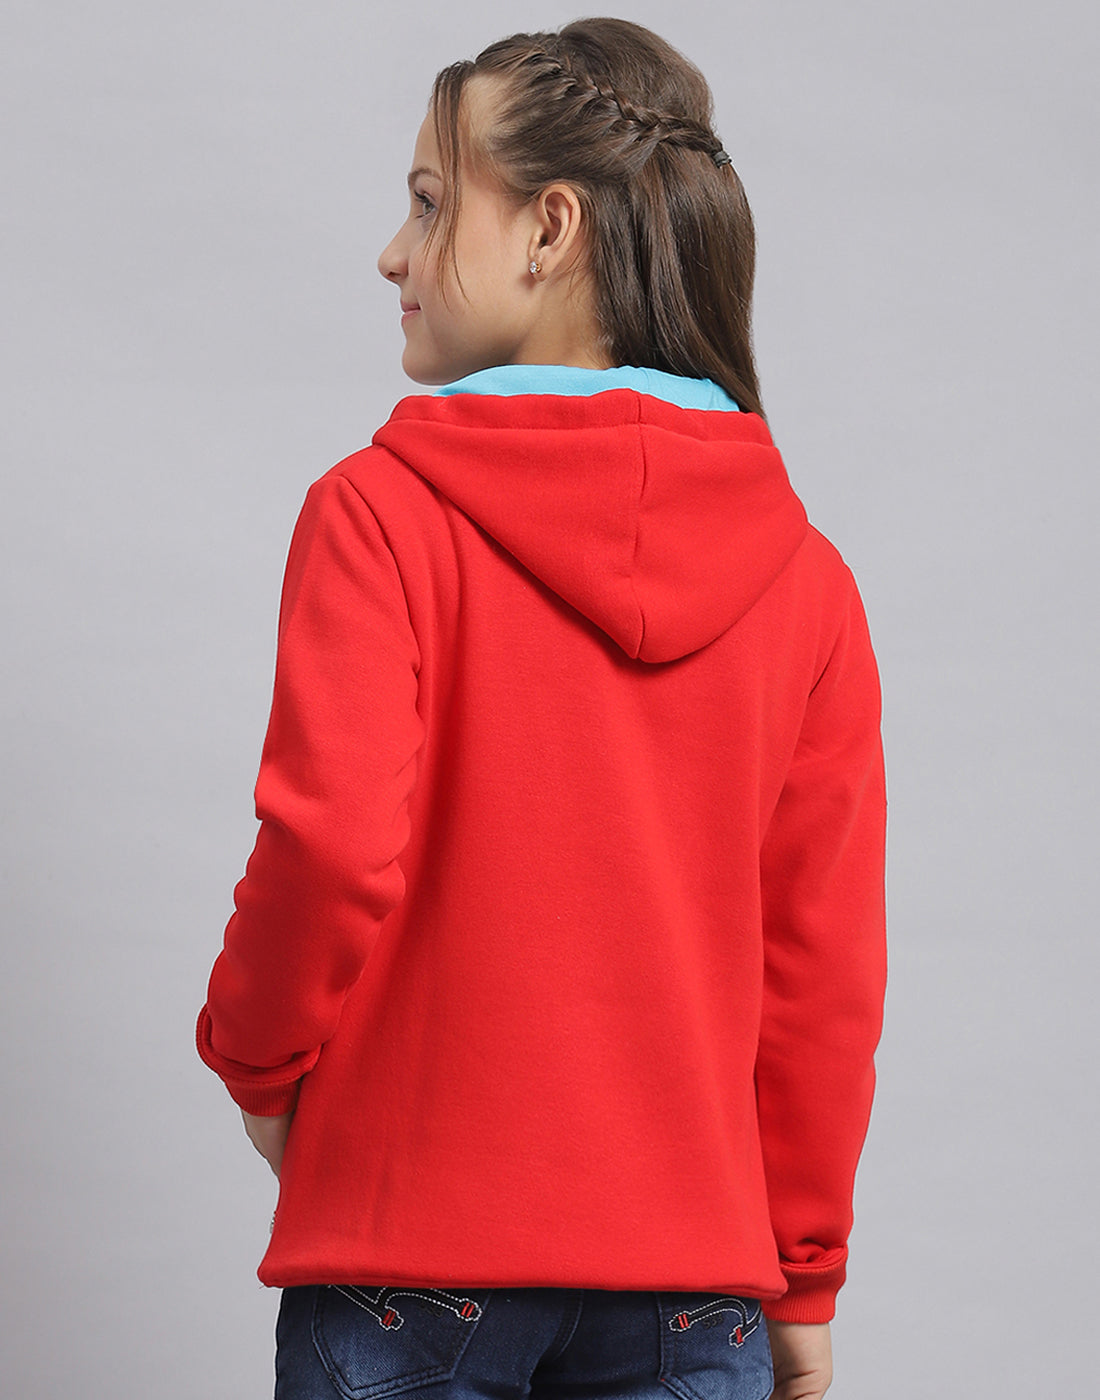 Girls Red Printed Hooded Full Sleeve Sweatshirt